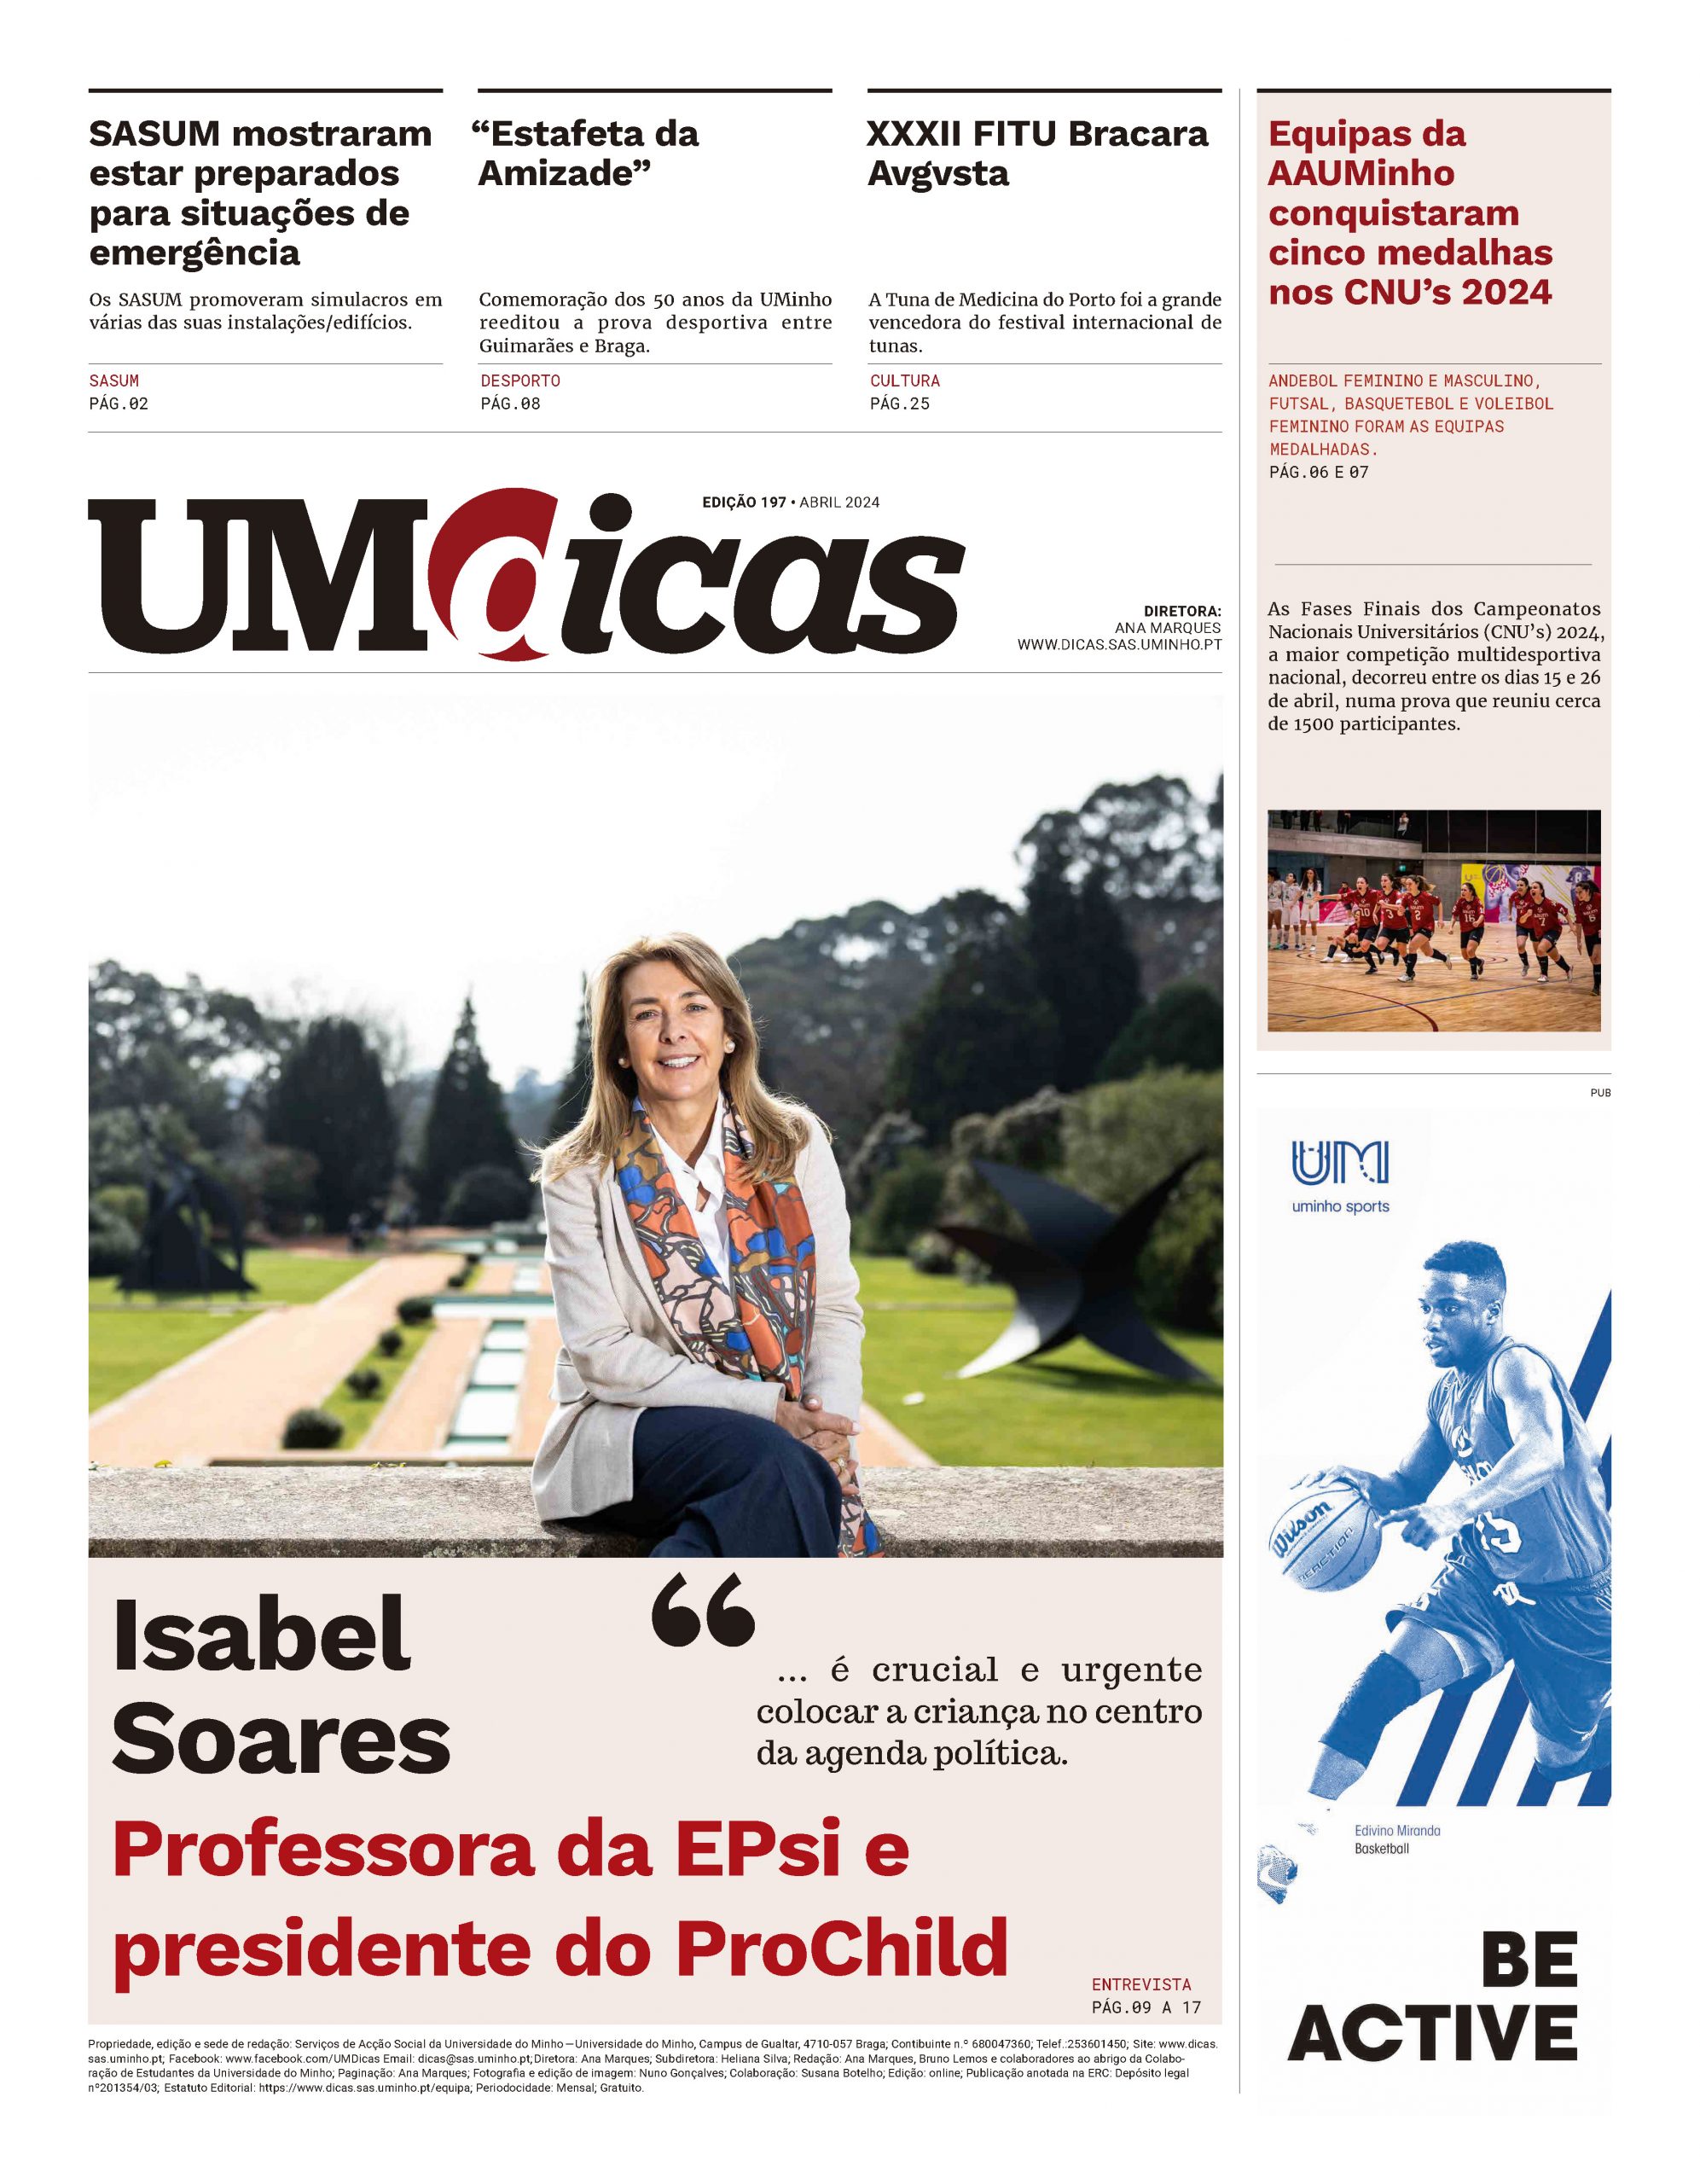 Capa do jornal UMDicas 197